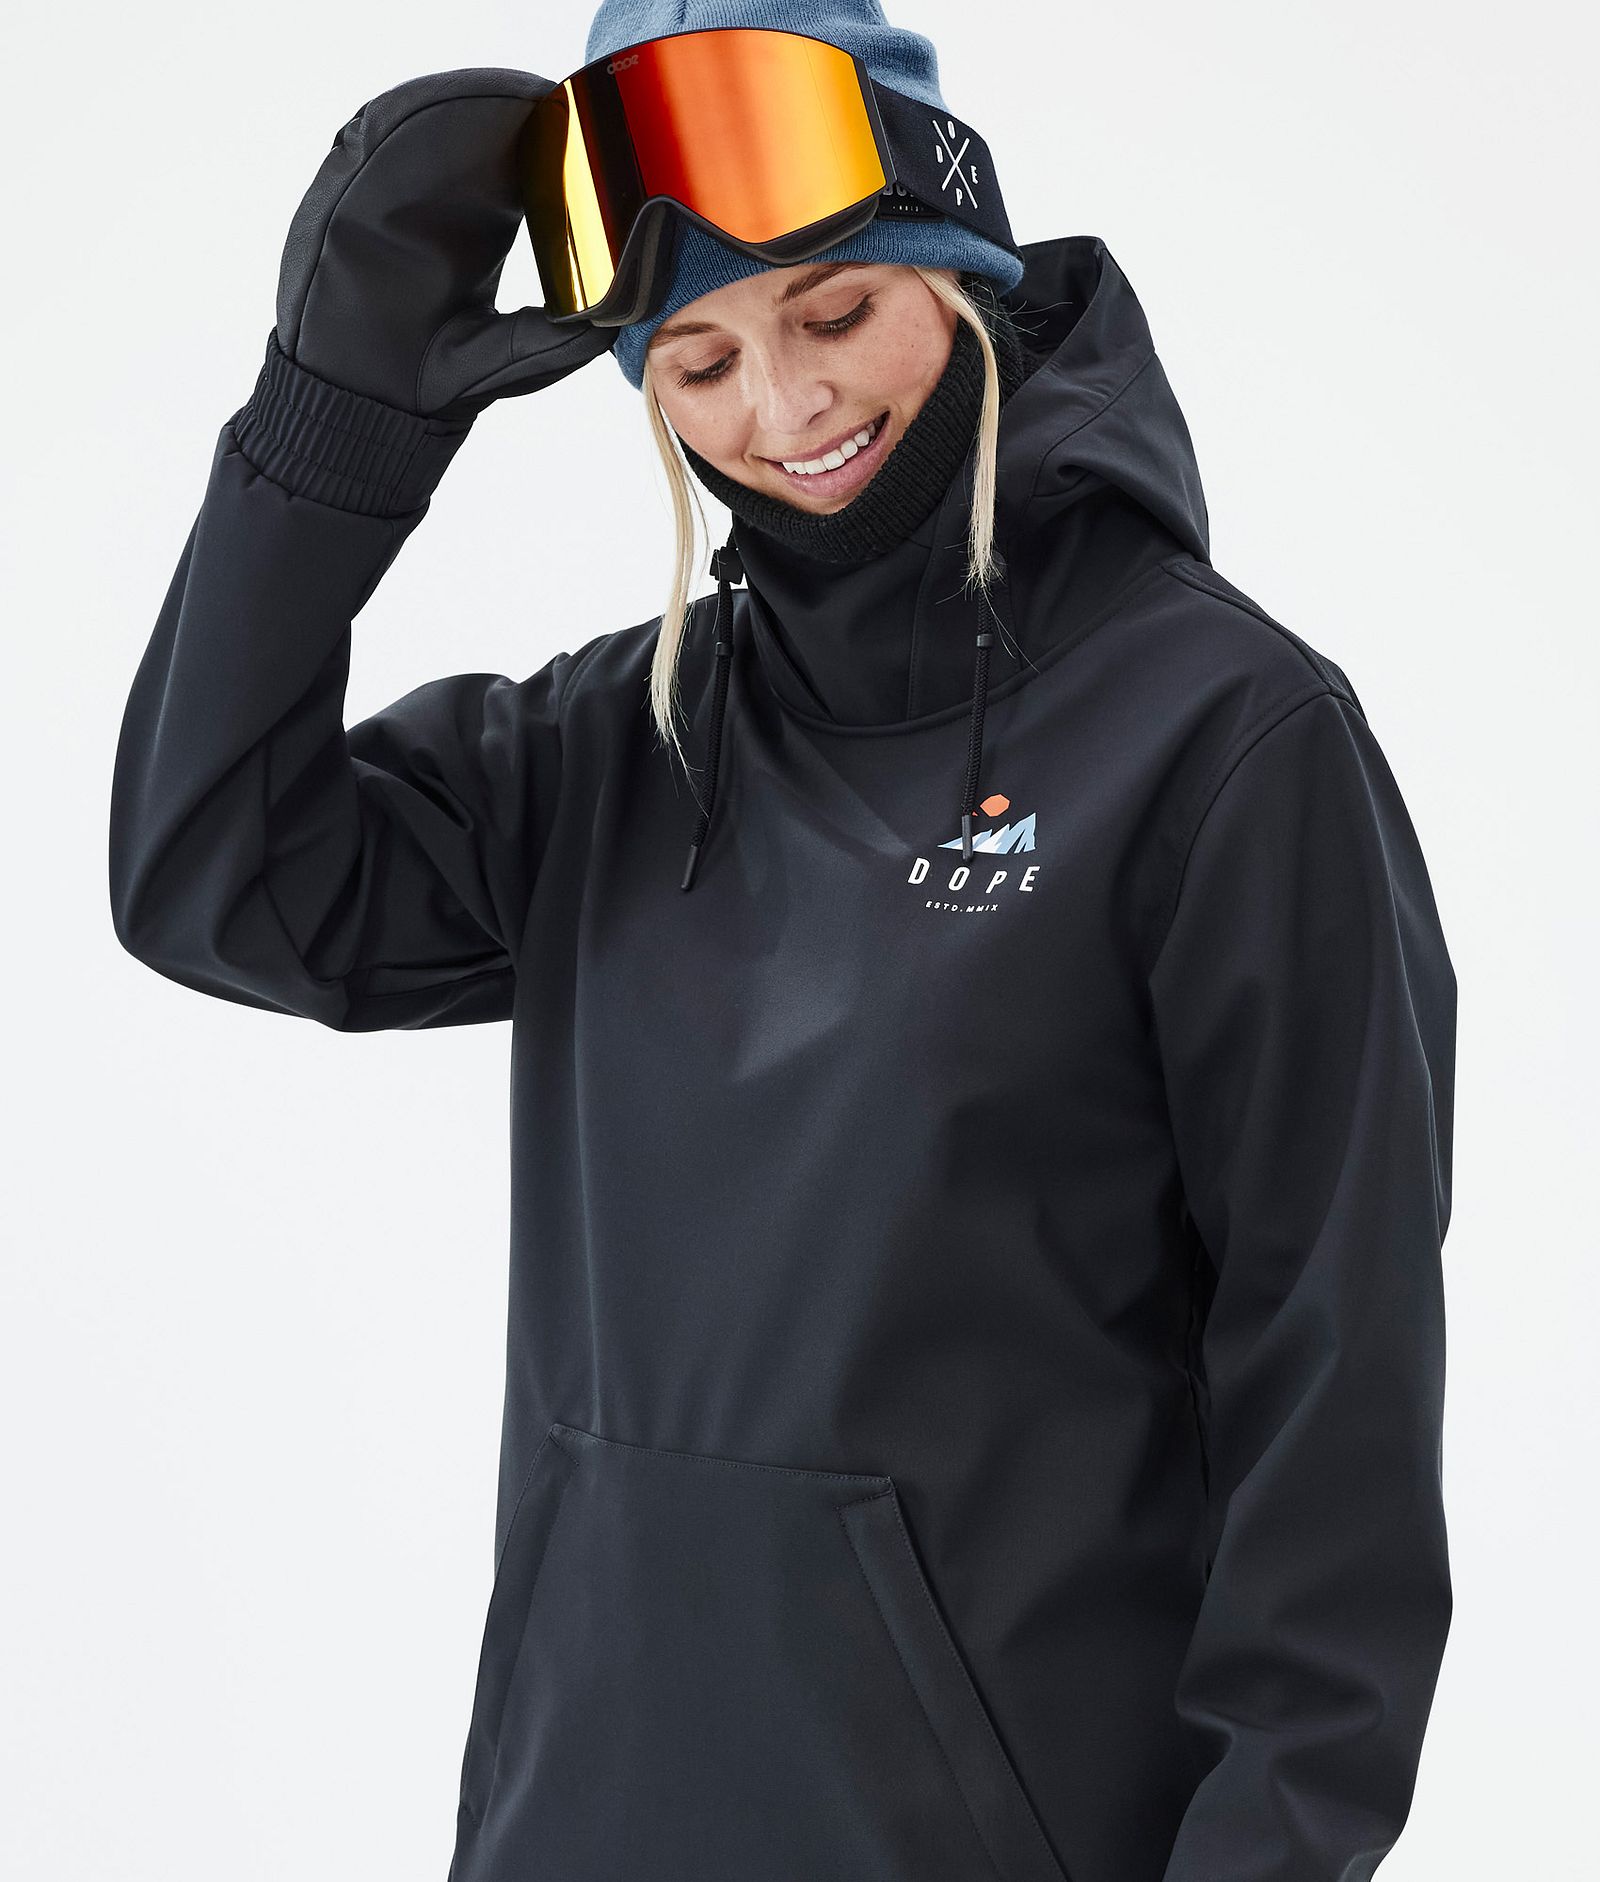 Dope Yeti W Snowboard Jacket Women Ice Black